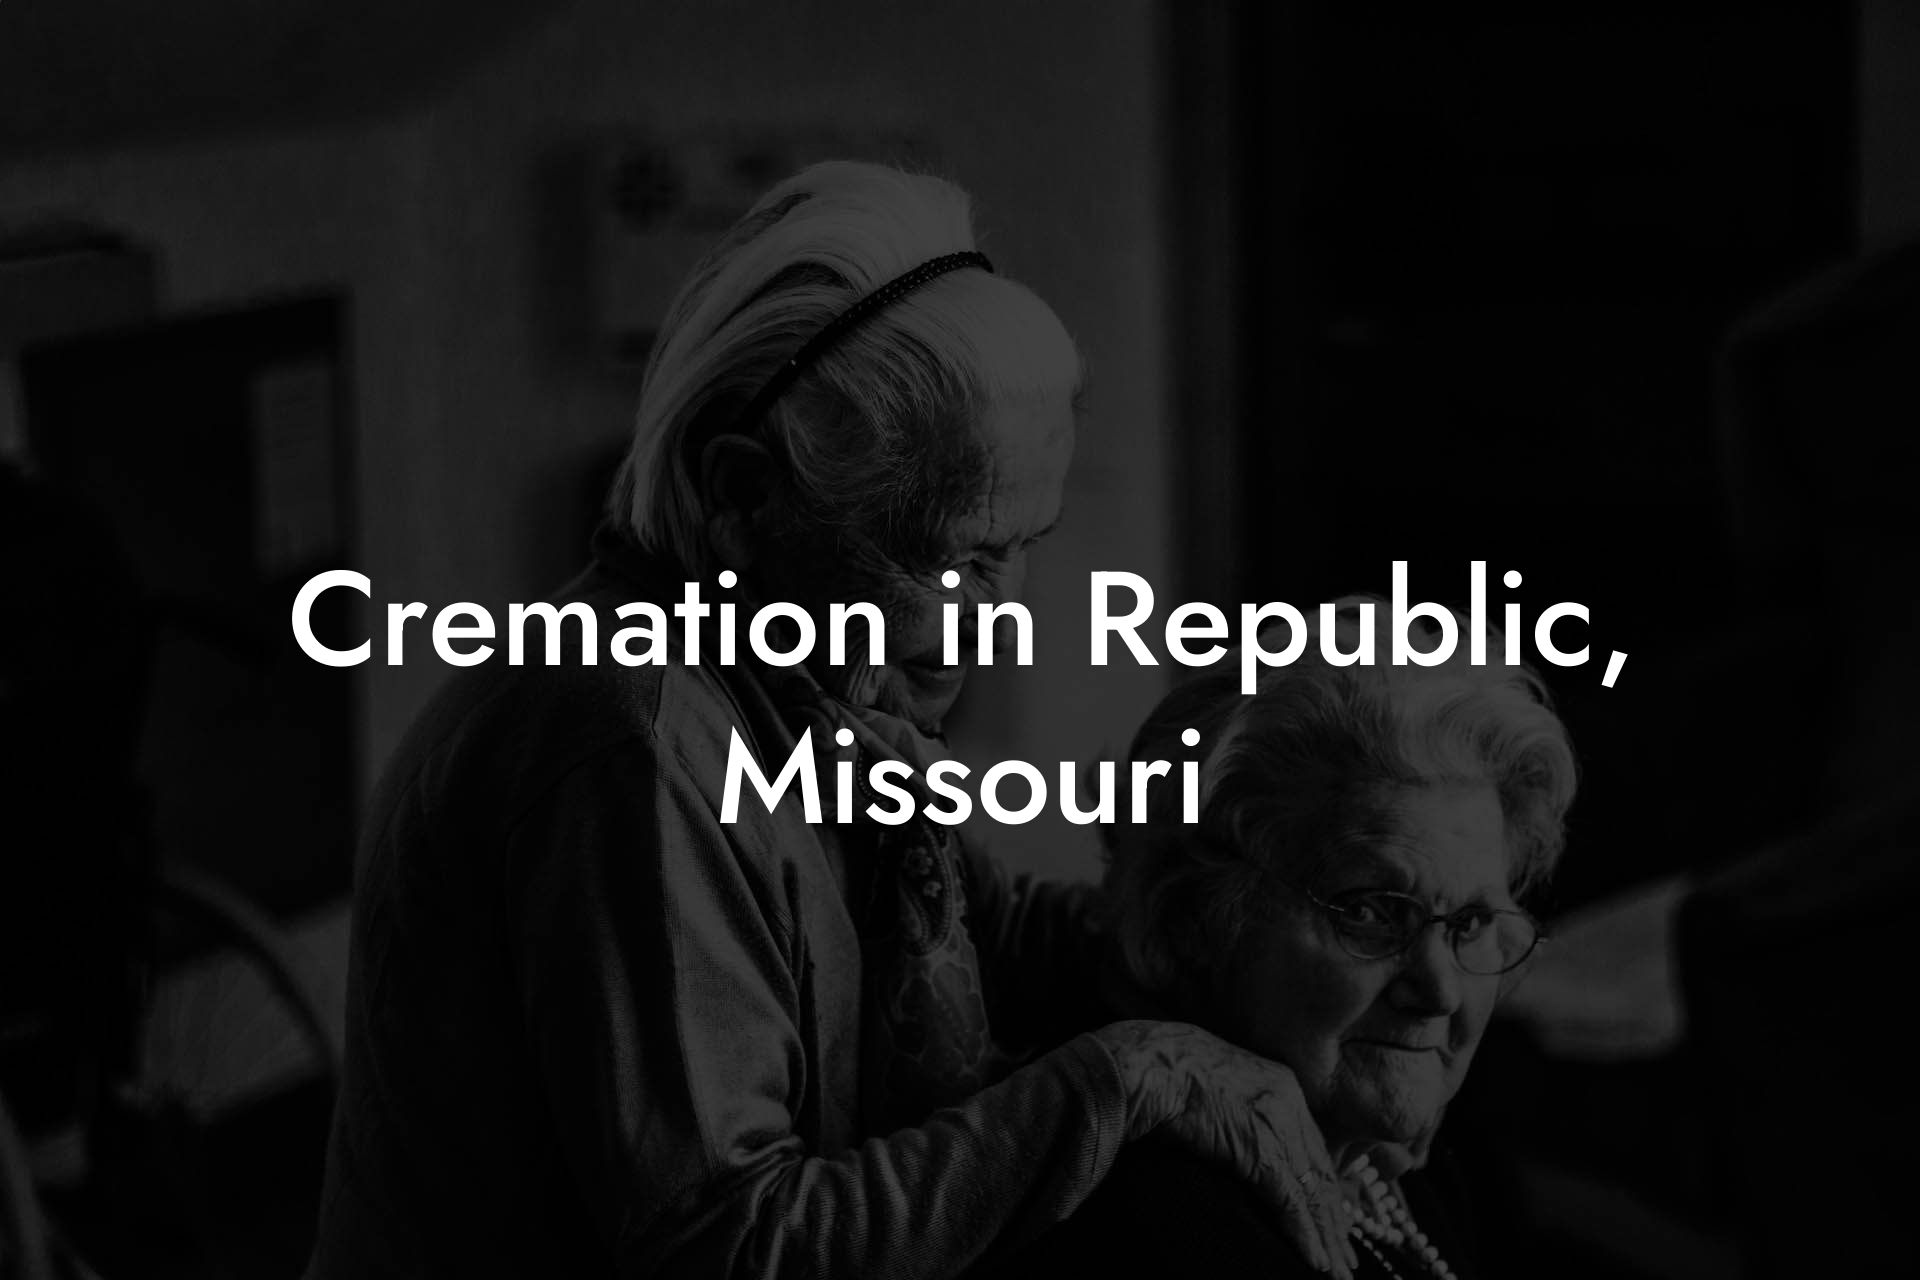 Cremation in Republic, Missouri